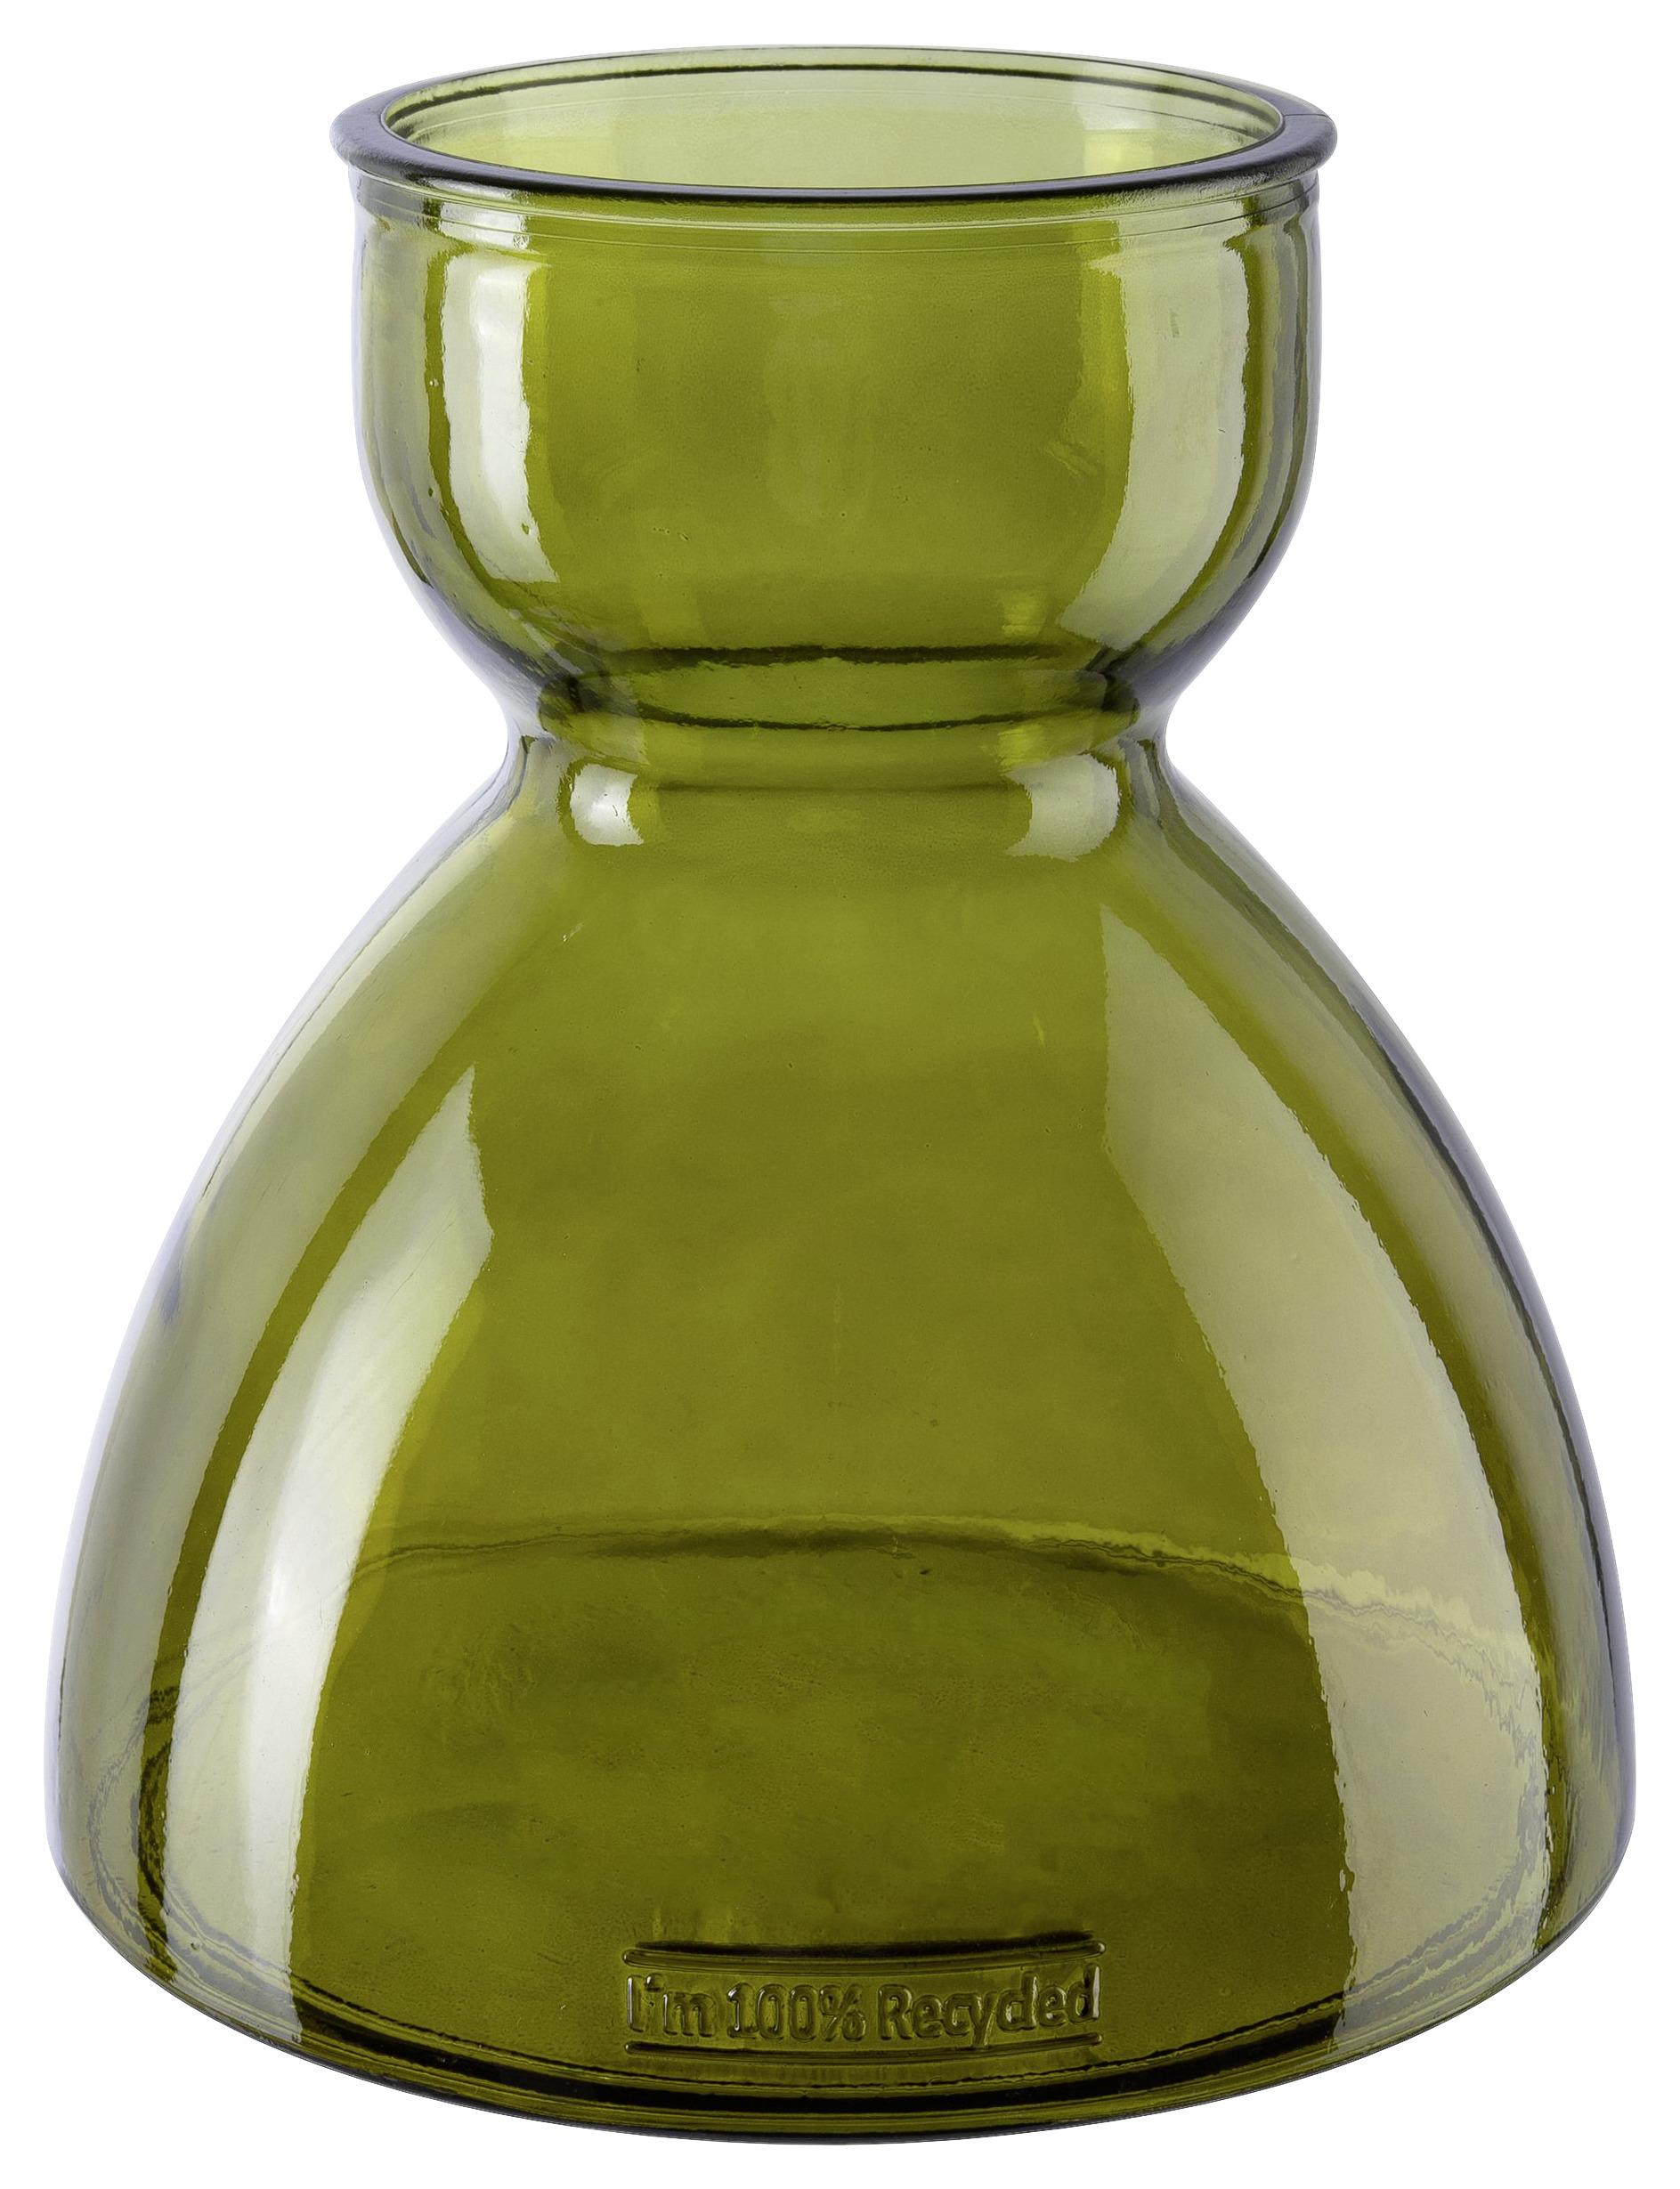 Vaza Paula I -Paz- - temno zelena, Moderno, steklo (22/23cm) - Premium Living